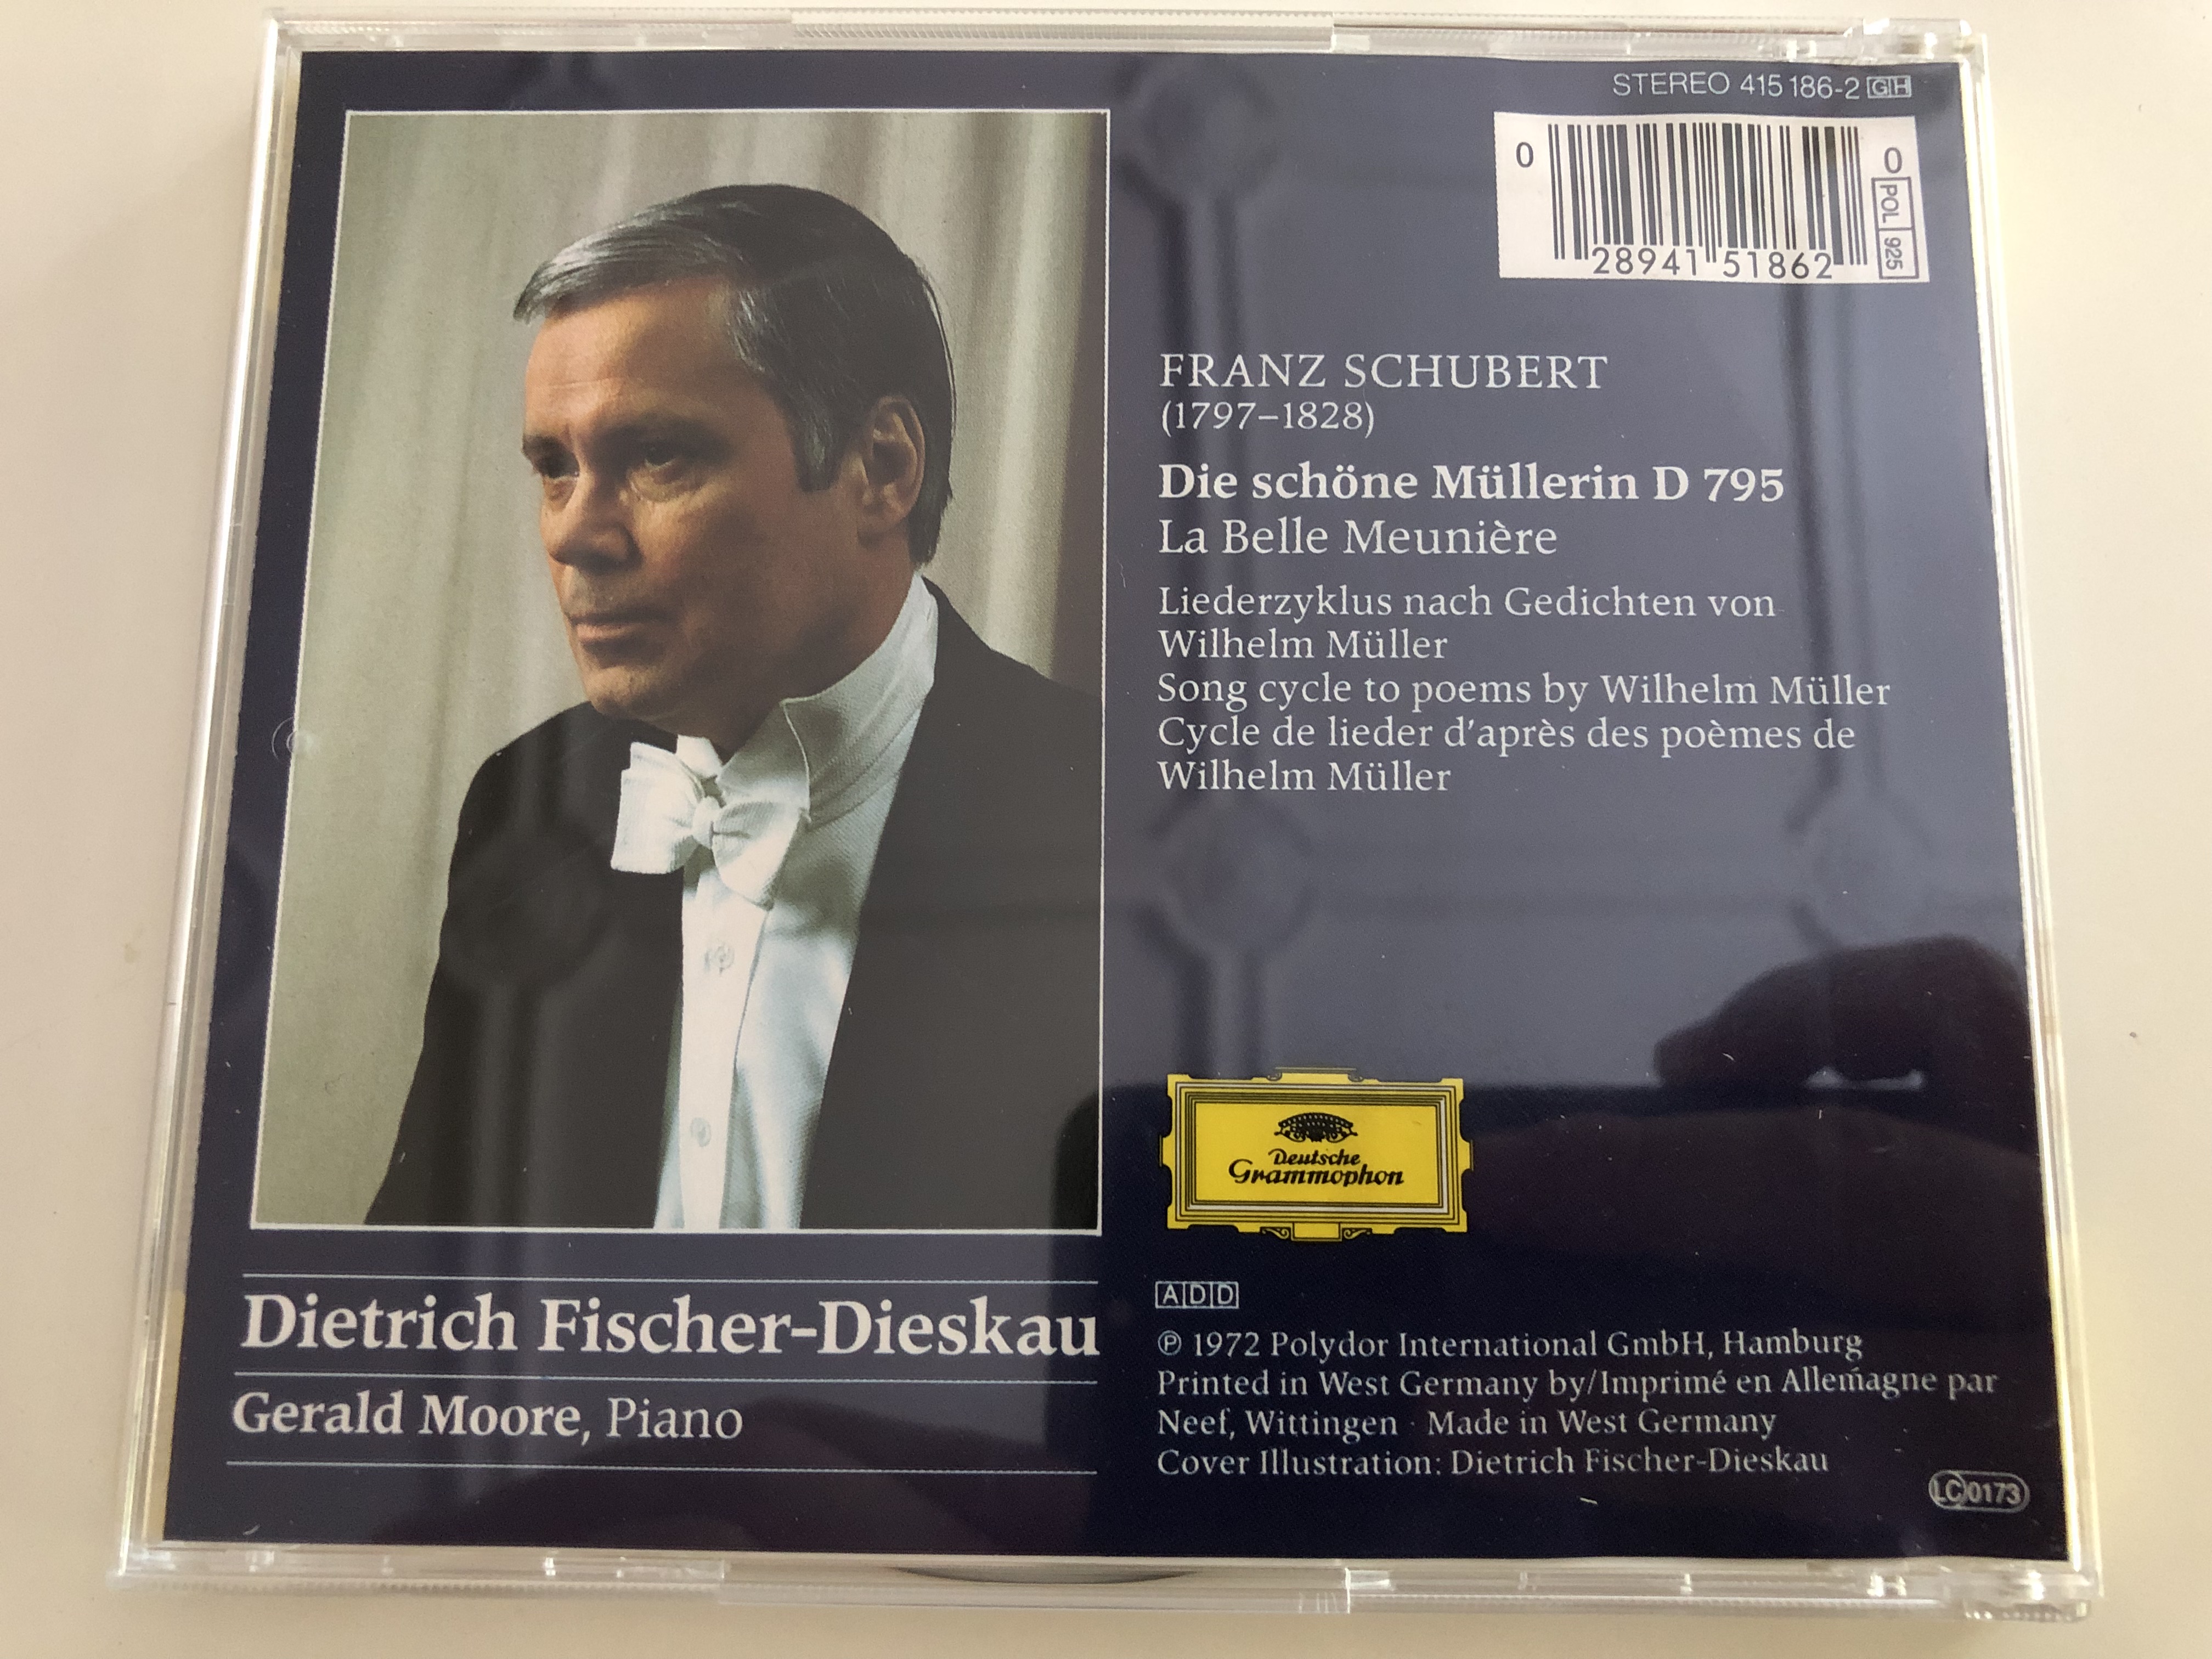 dietrich-fischer-dieskau-baritone-schubert-die-sch-ne-m-llerin-gerald-moore-piano-audio-cd-415-186-2-6-.jpg